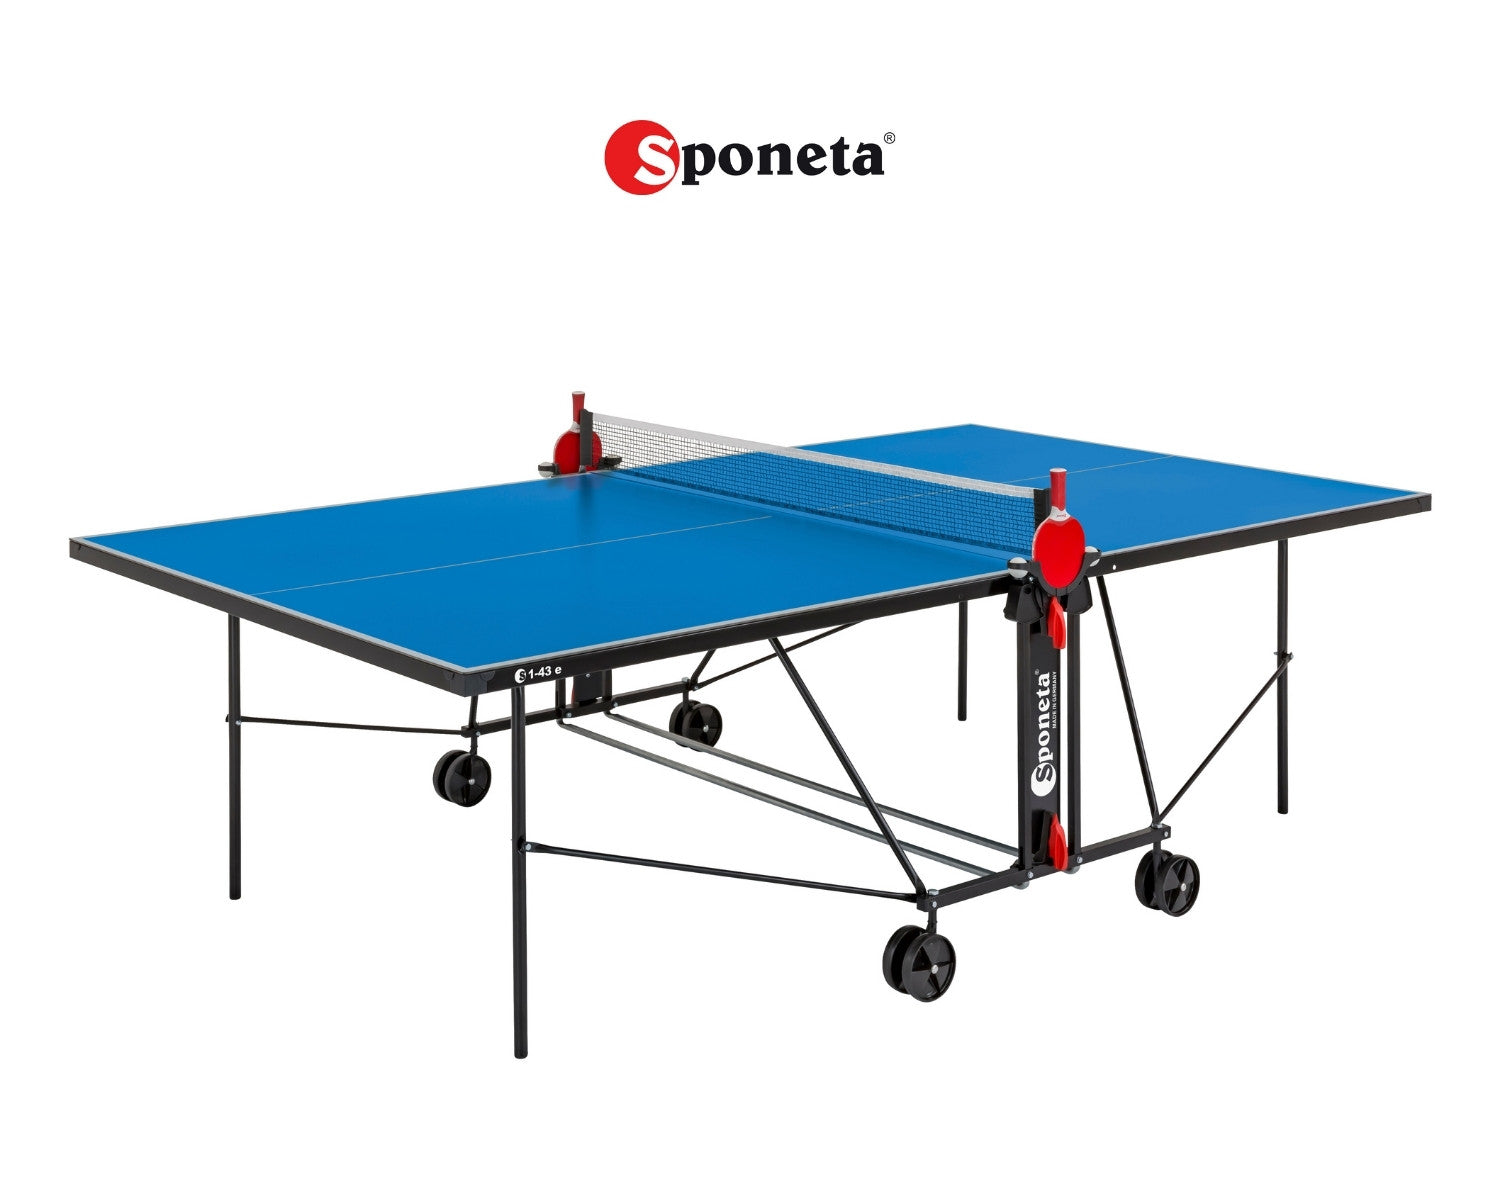 Sponeta Tavolo da Ping Pong Outdoor S 1-43 e